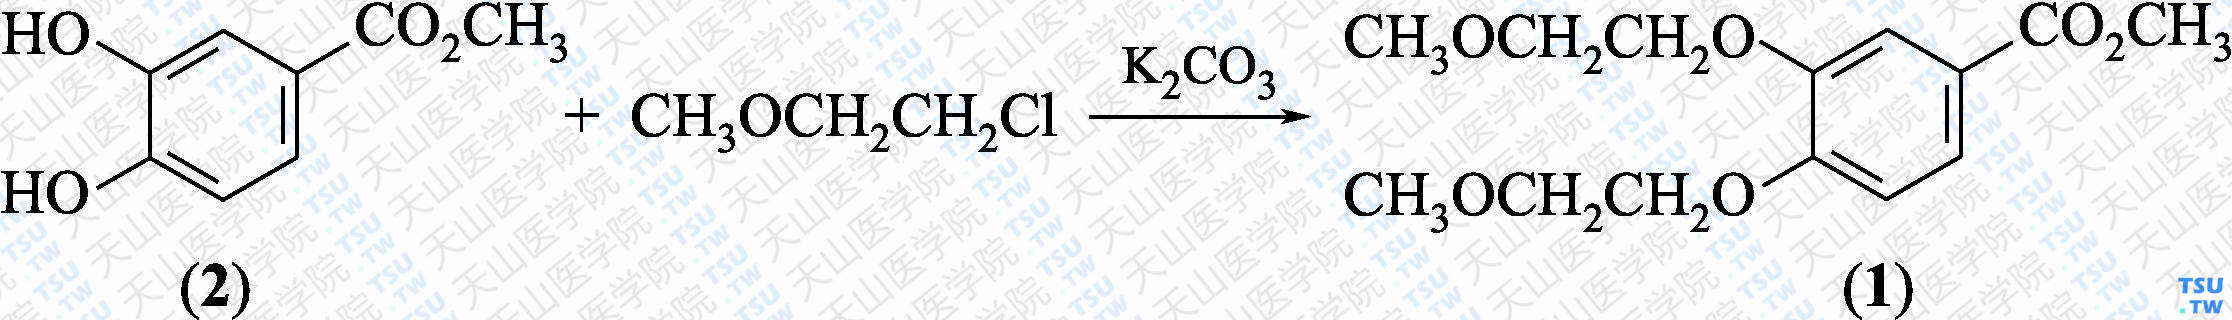 3，4-二-（2-甲氧基乙氧基）-苯甲酸甲酯（分子式：C<sub>14</sub>H<sub>20</sub>O<sub>6</sub>）的合成方法路线及其结构式